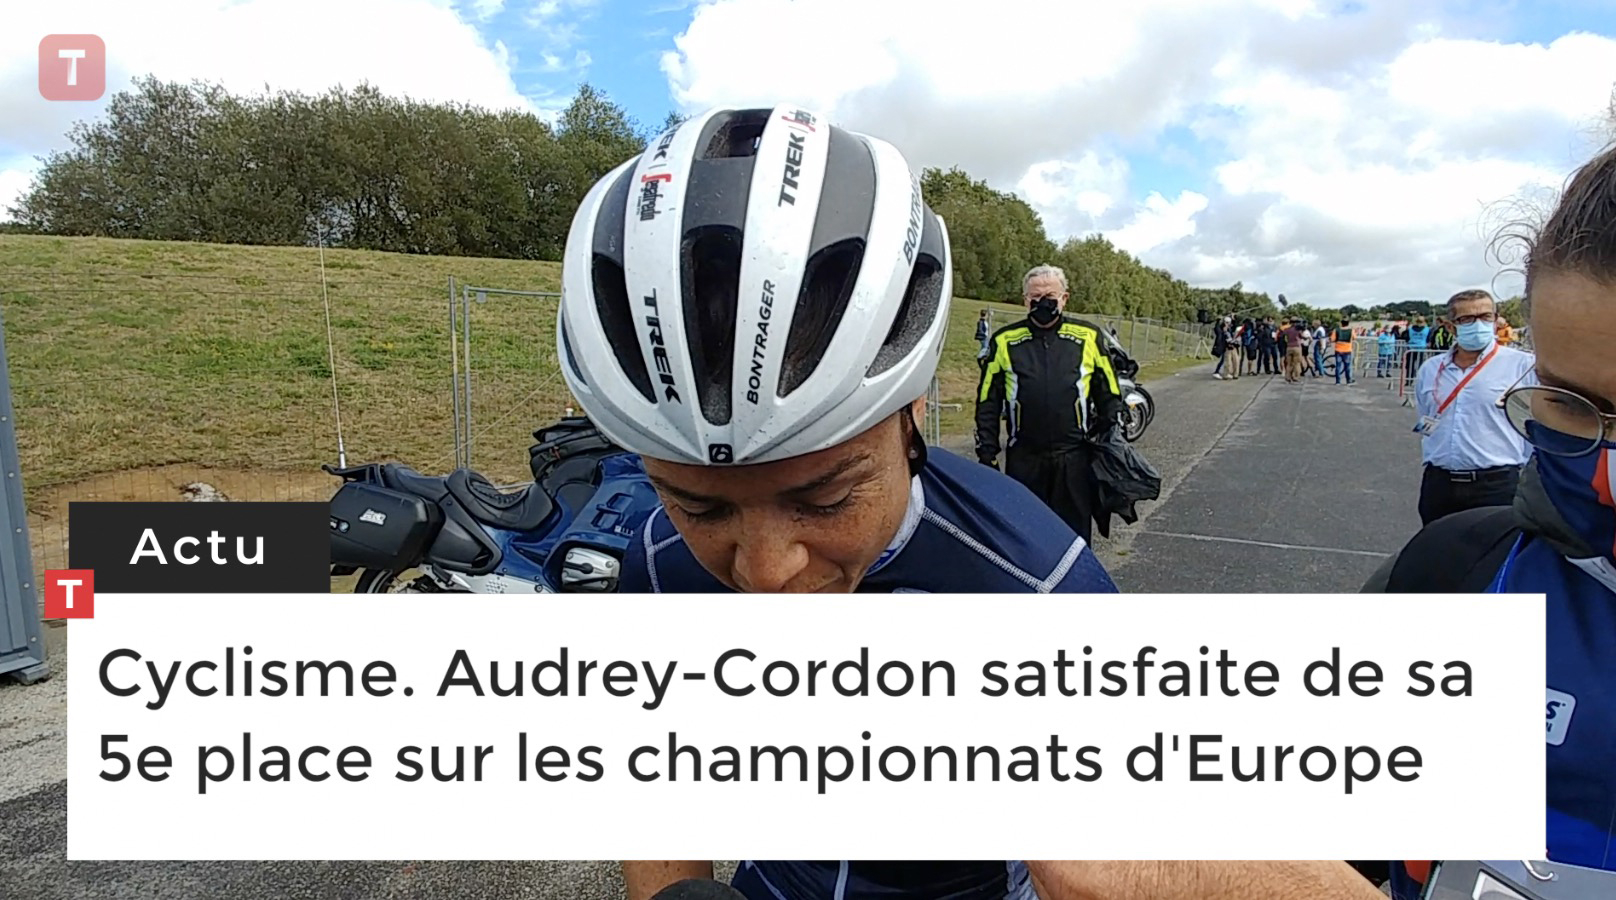 Cyclisme. Audrey-Cordon satisfaite de sa 5e place sur les championnats d'Europe (Le Télégramme)